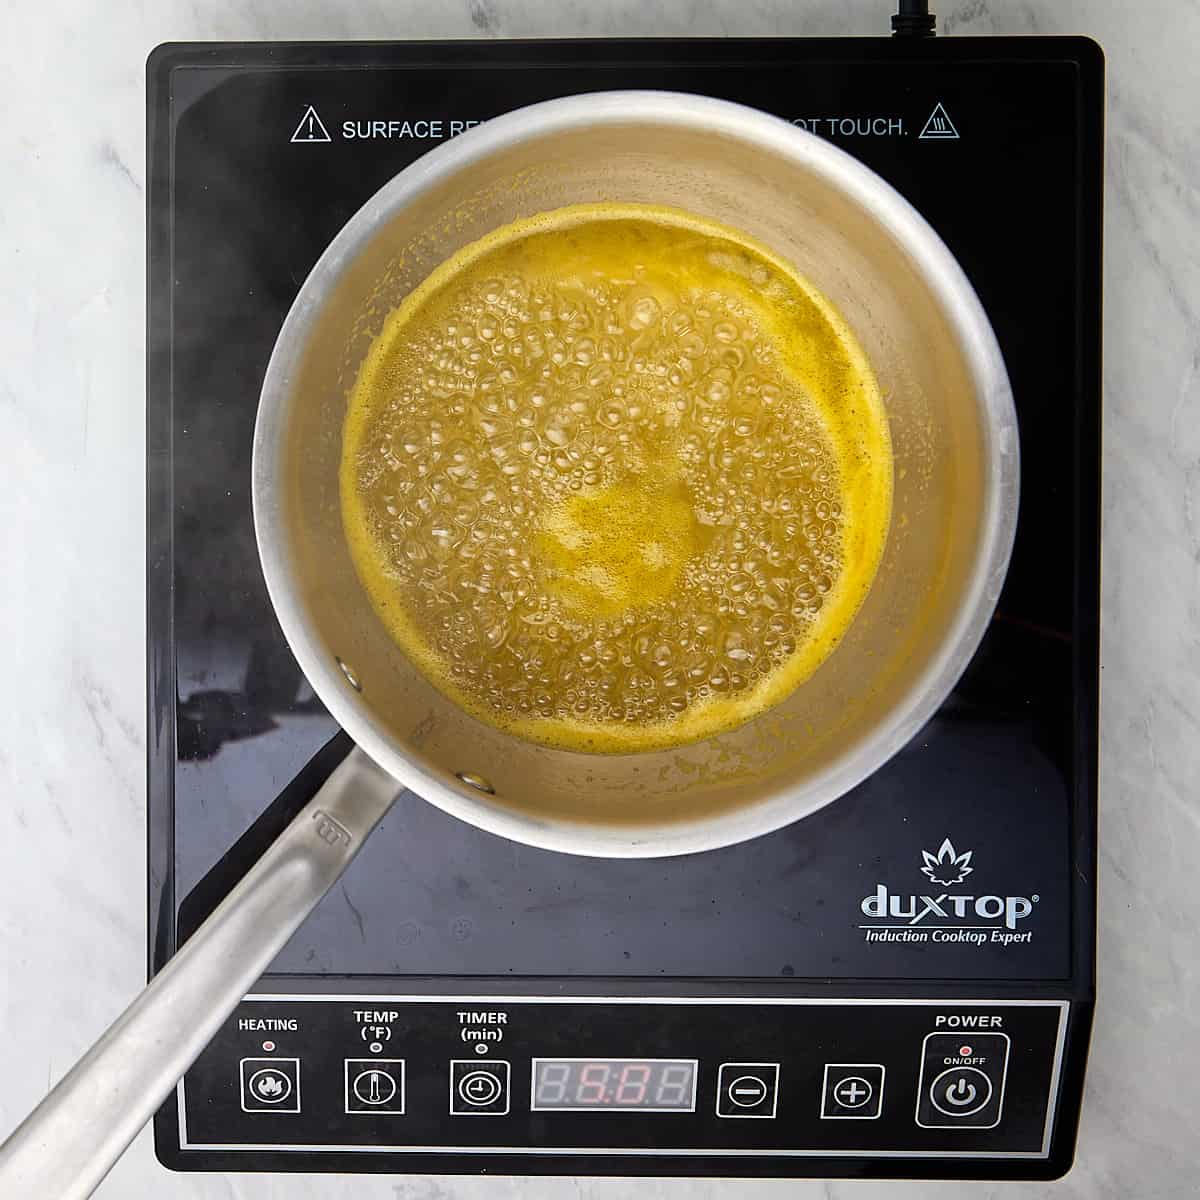 water, sugar, orange juice, and salt being boiled in a saucepan